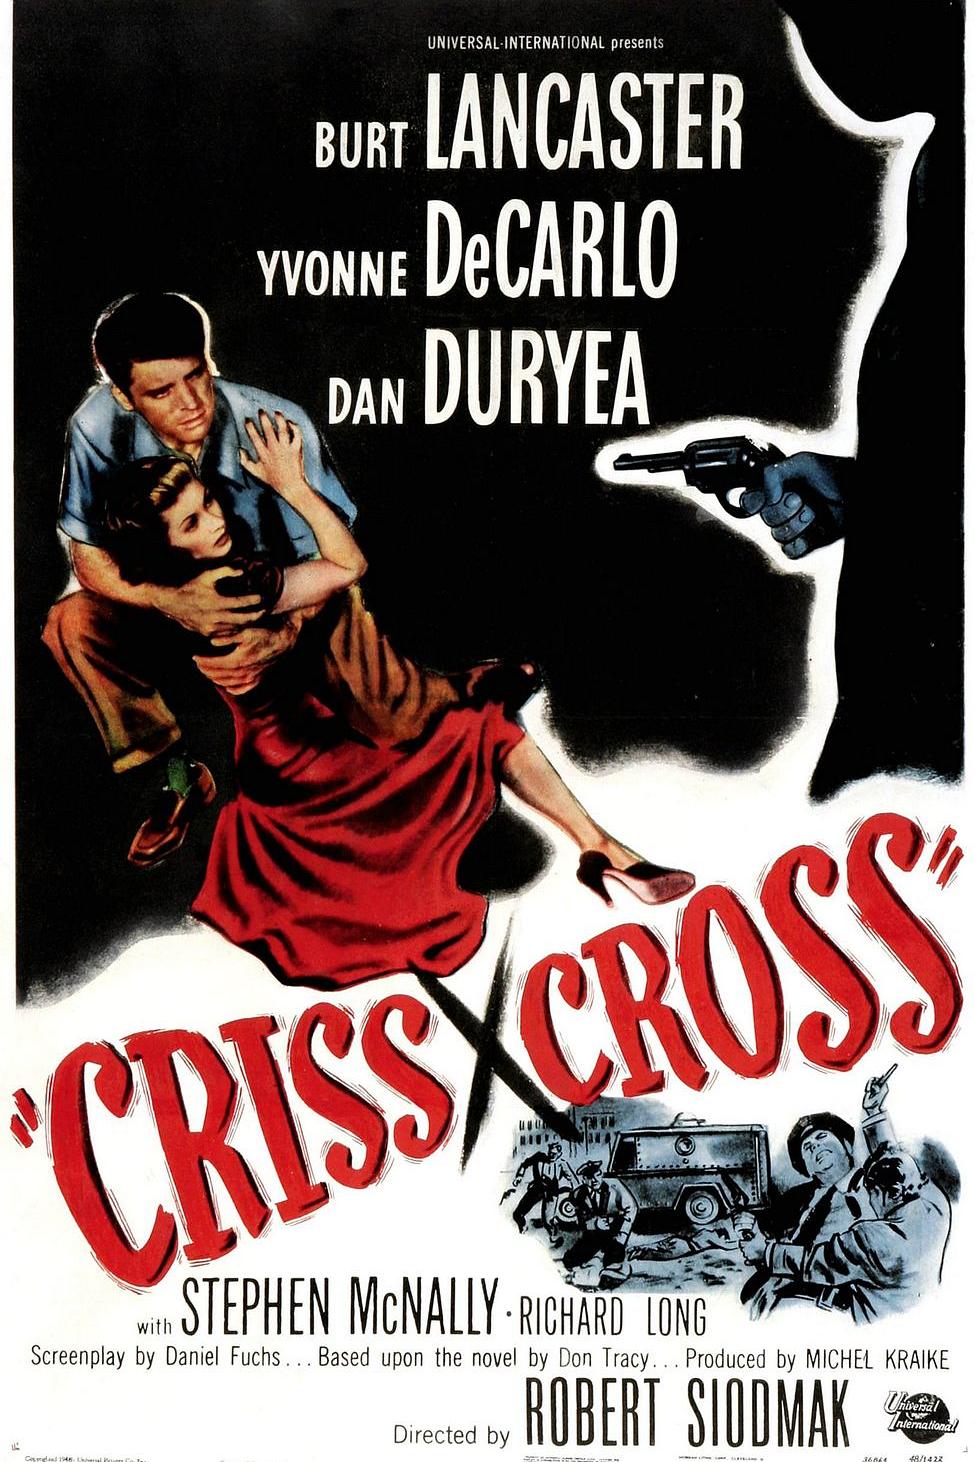 [十字交锋].Criss.Cross.1949.BluRay.1080p.AVC.DTS-HD.MA.2.0-DiY@HDHome     27.75G-2.jpg